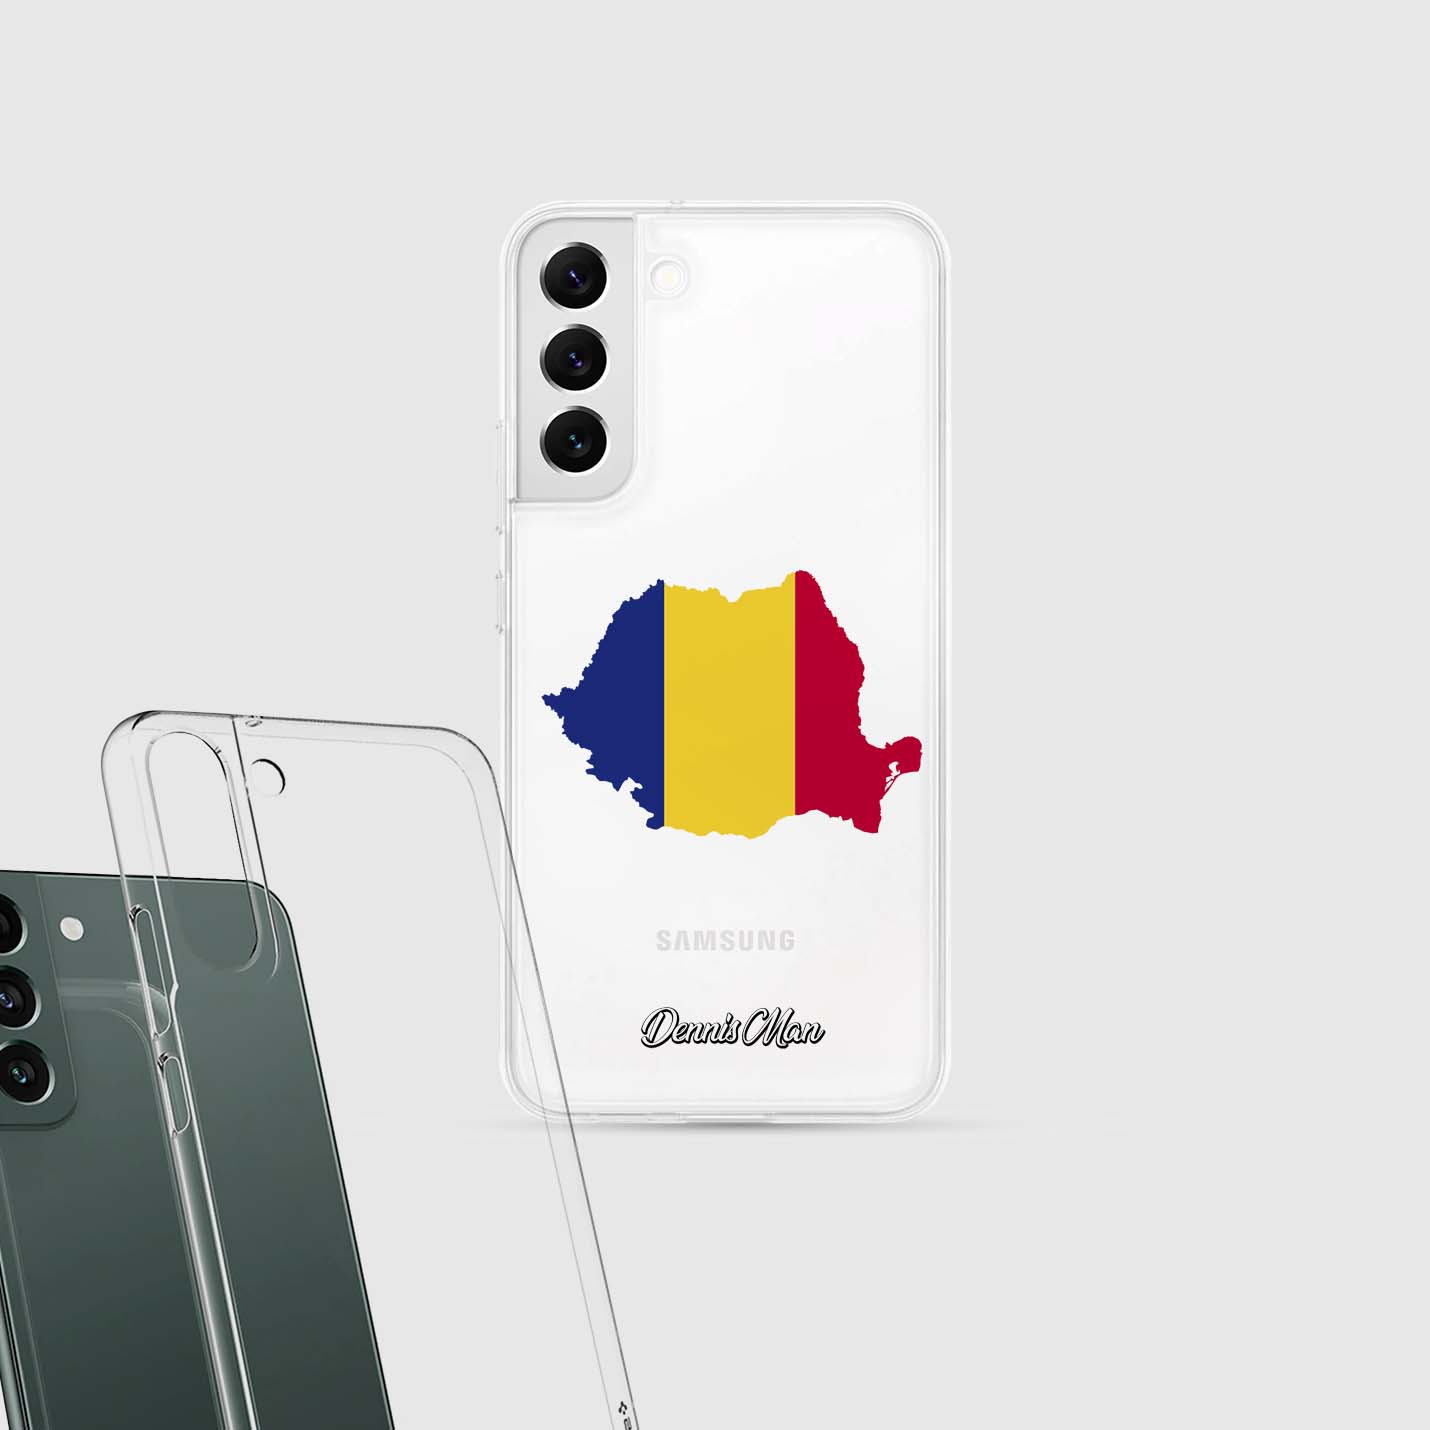 Handyhüllen mit Flagge - Rumänien - 1instaphone